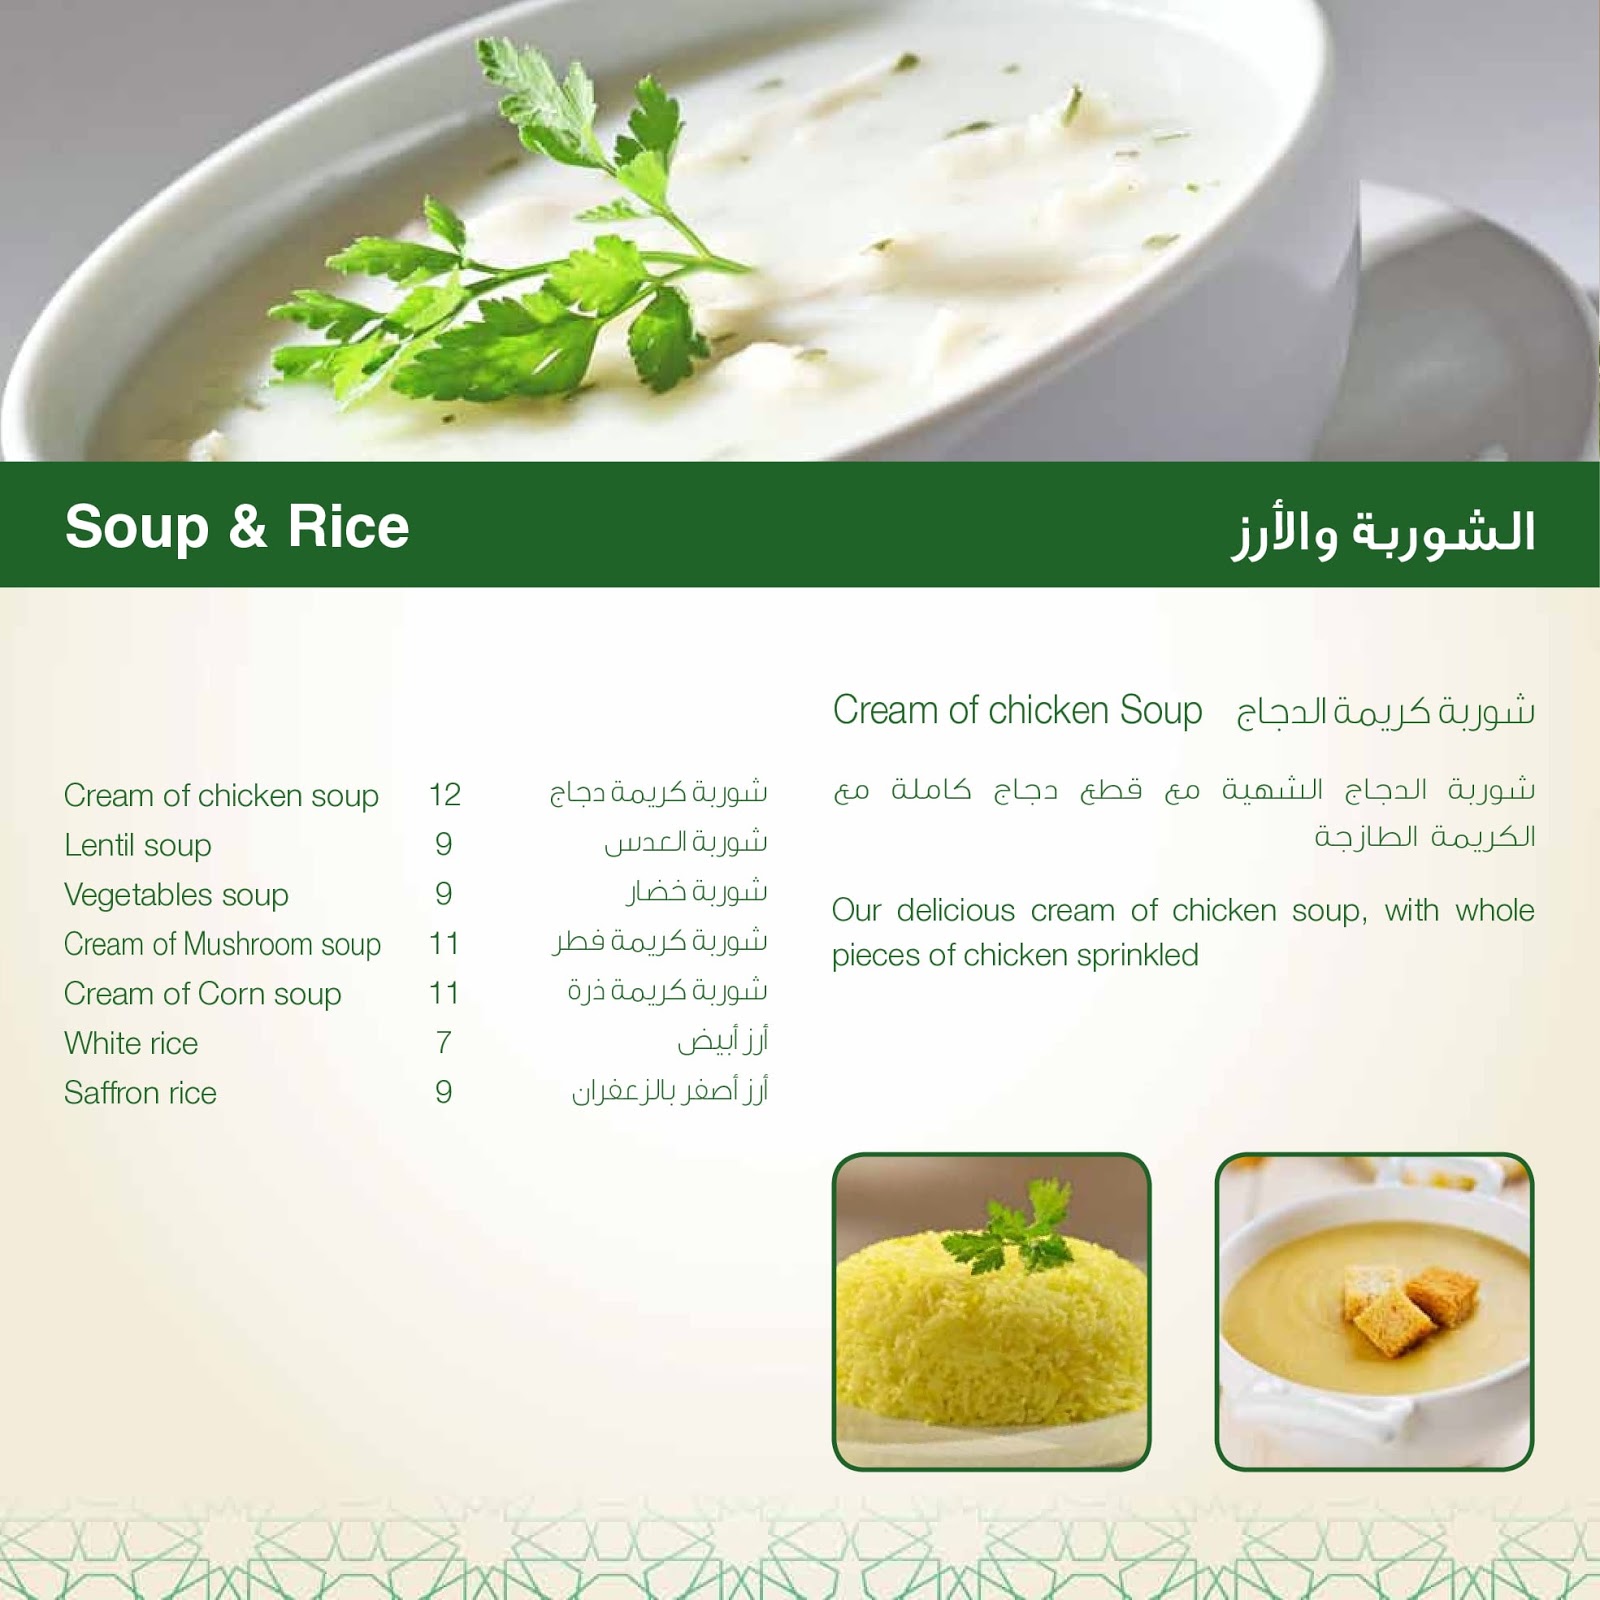 قائمة مطعم الشامي وأرقام الاتصال لجميع الفروع